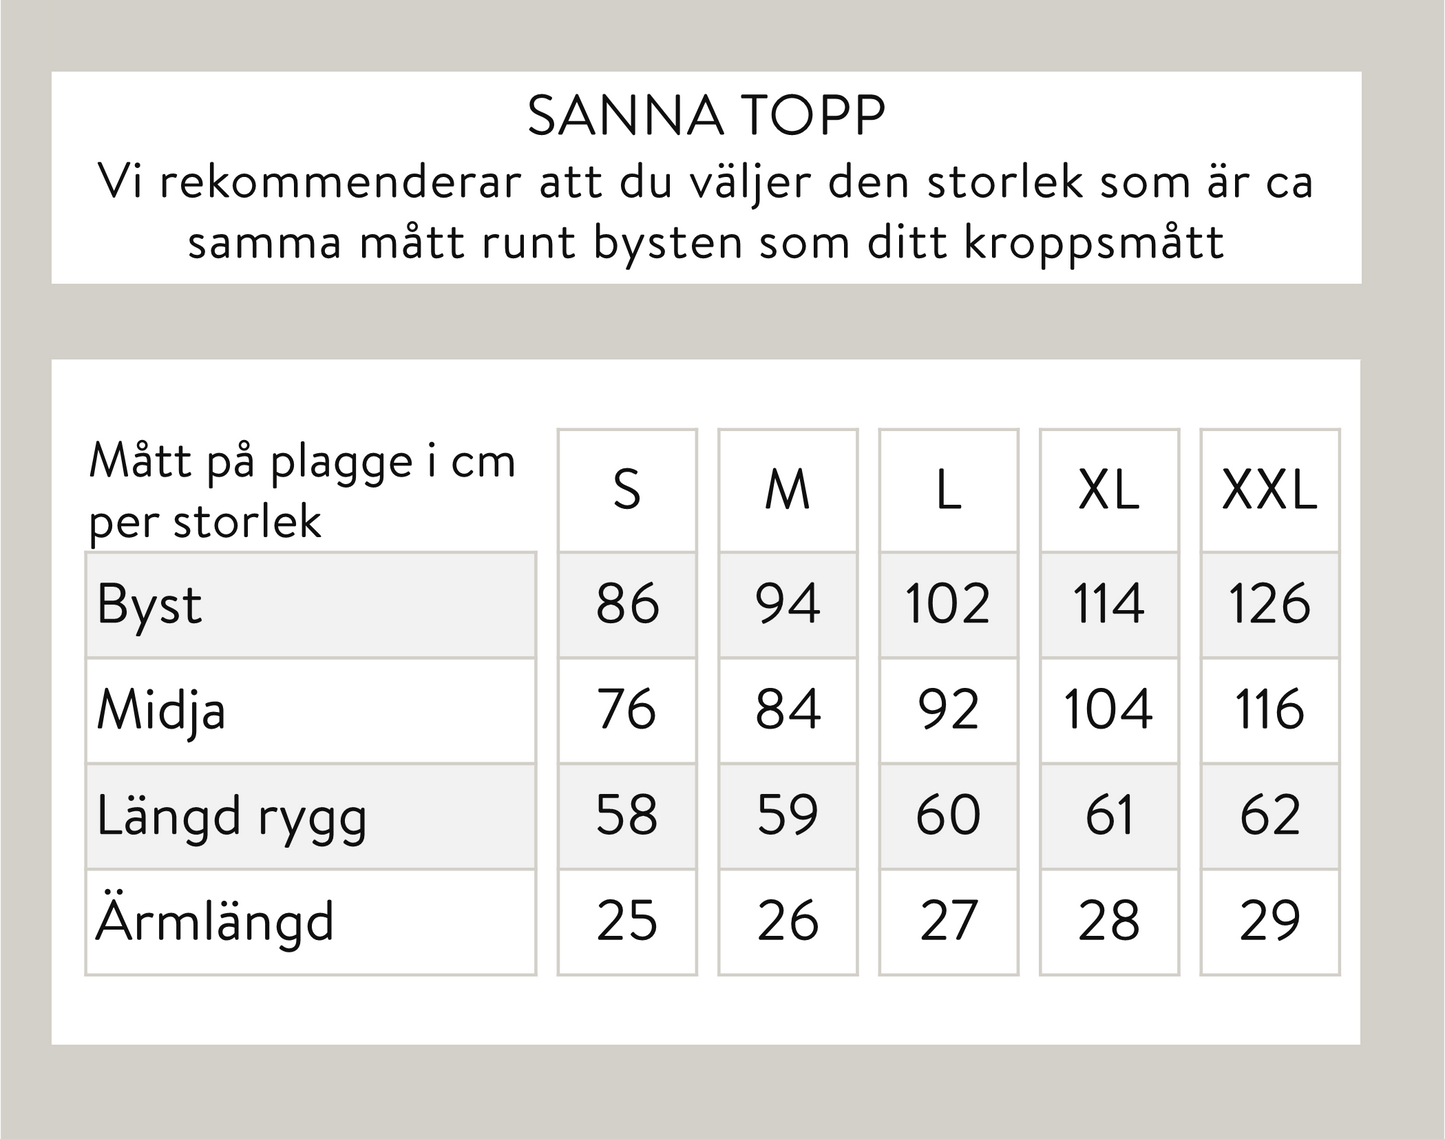 Sanna topp - Svart